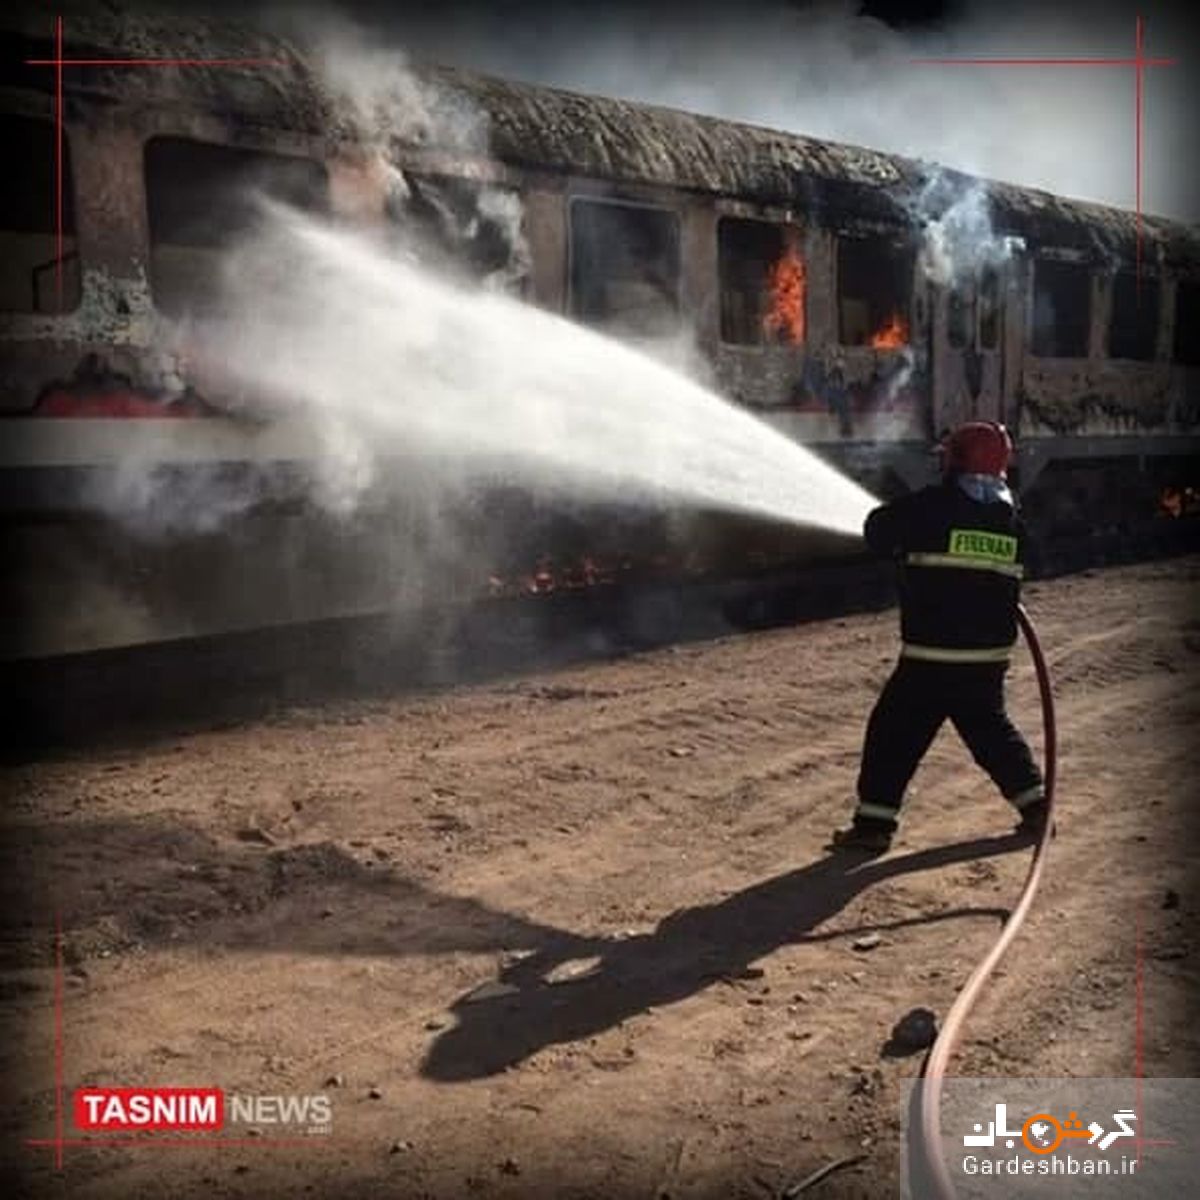 قطار مسافربری یزد - بادرود - تهران دچار حریق شد/مسافران به ایستگاه بادرود منتقل شدند